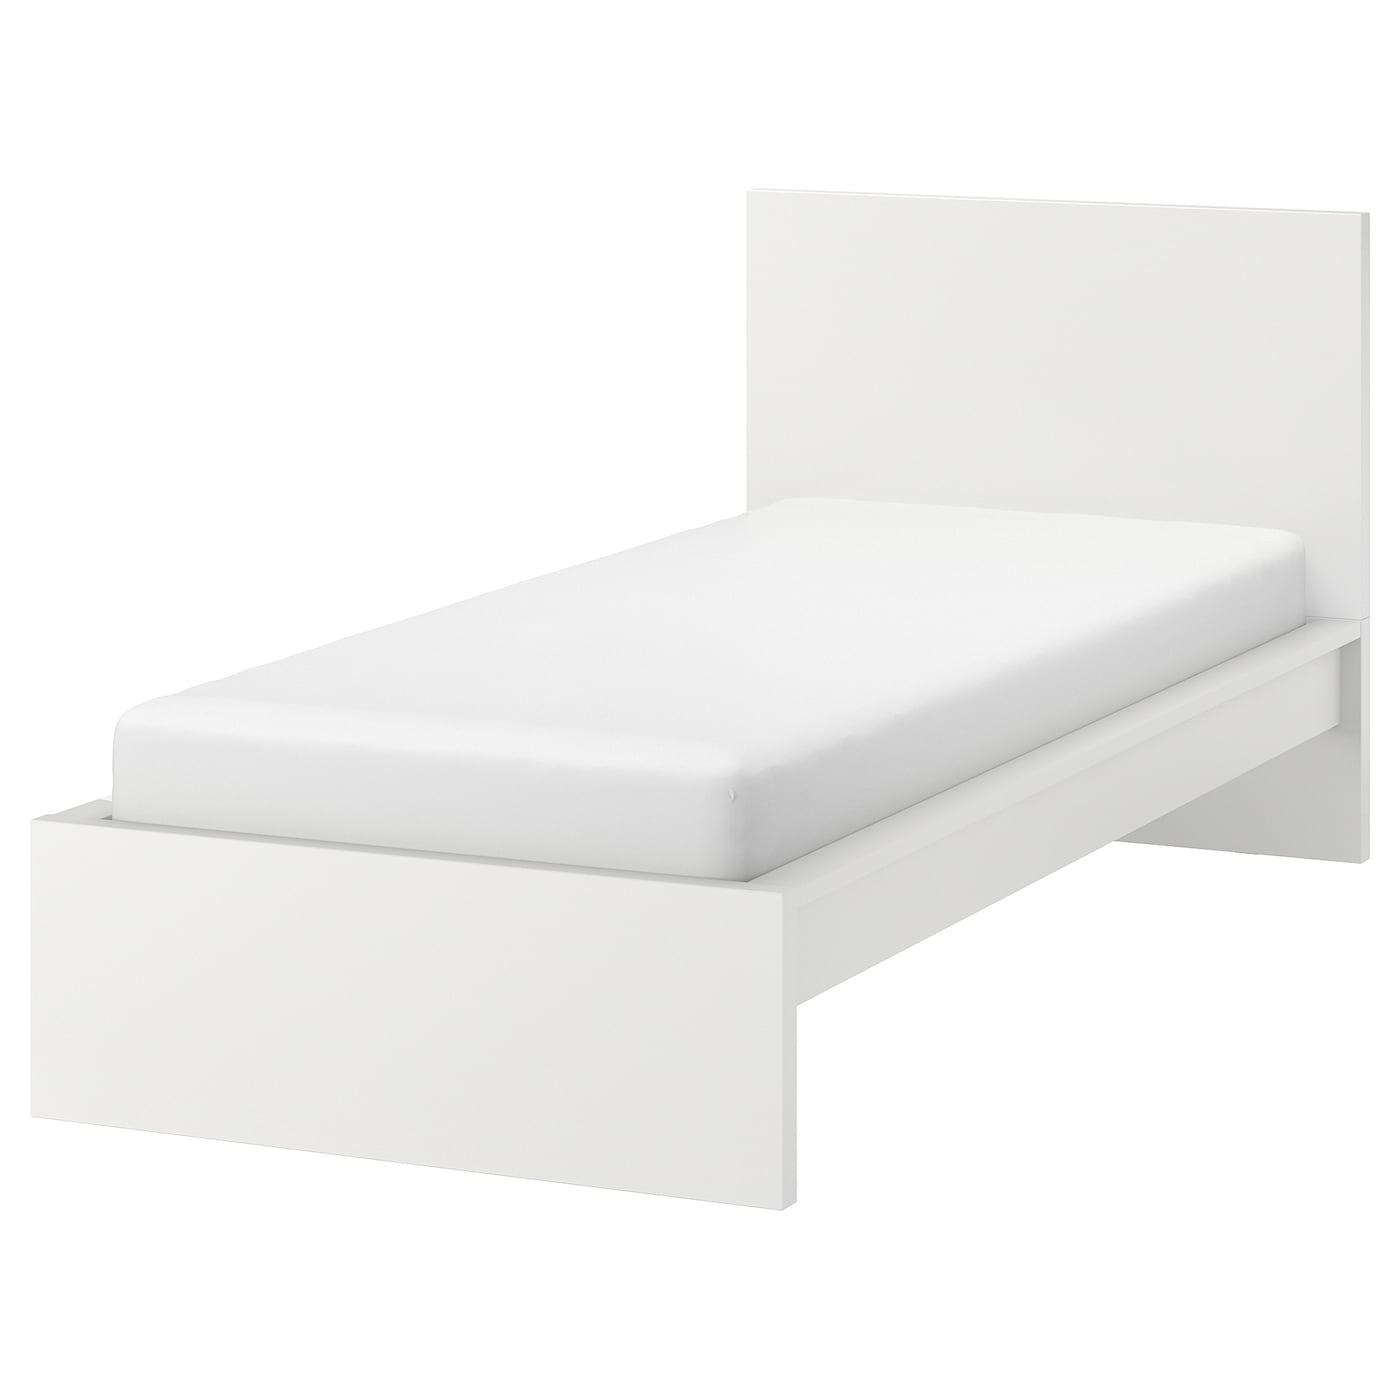 Каркас кровати - IKEA MALM/LÖNSET/LONSET, 200х90 см, белый, МАЛЬМ/ЛОНСЕТ ИКЕА